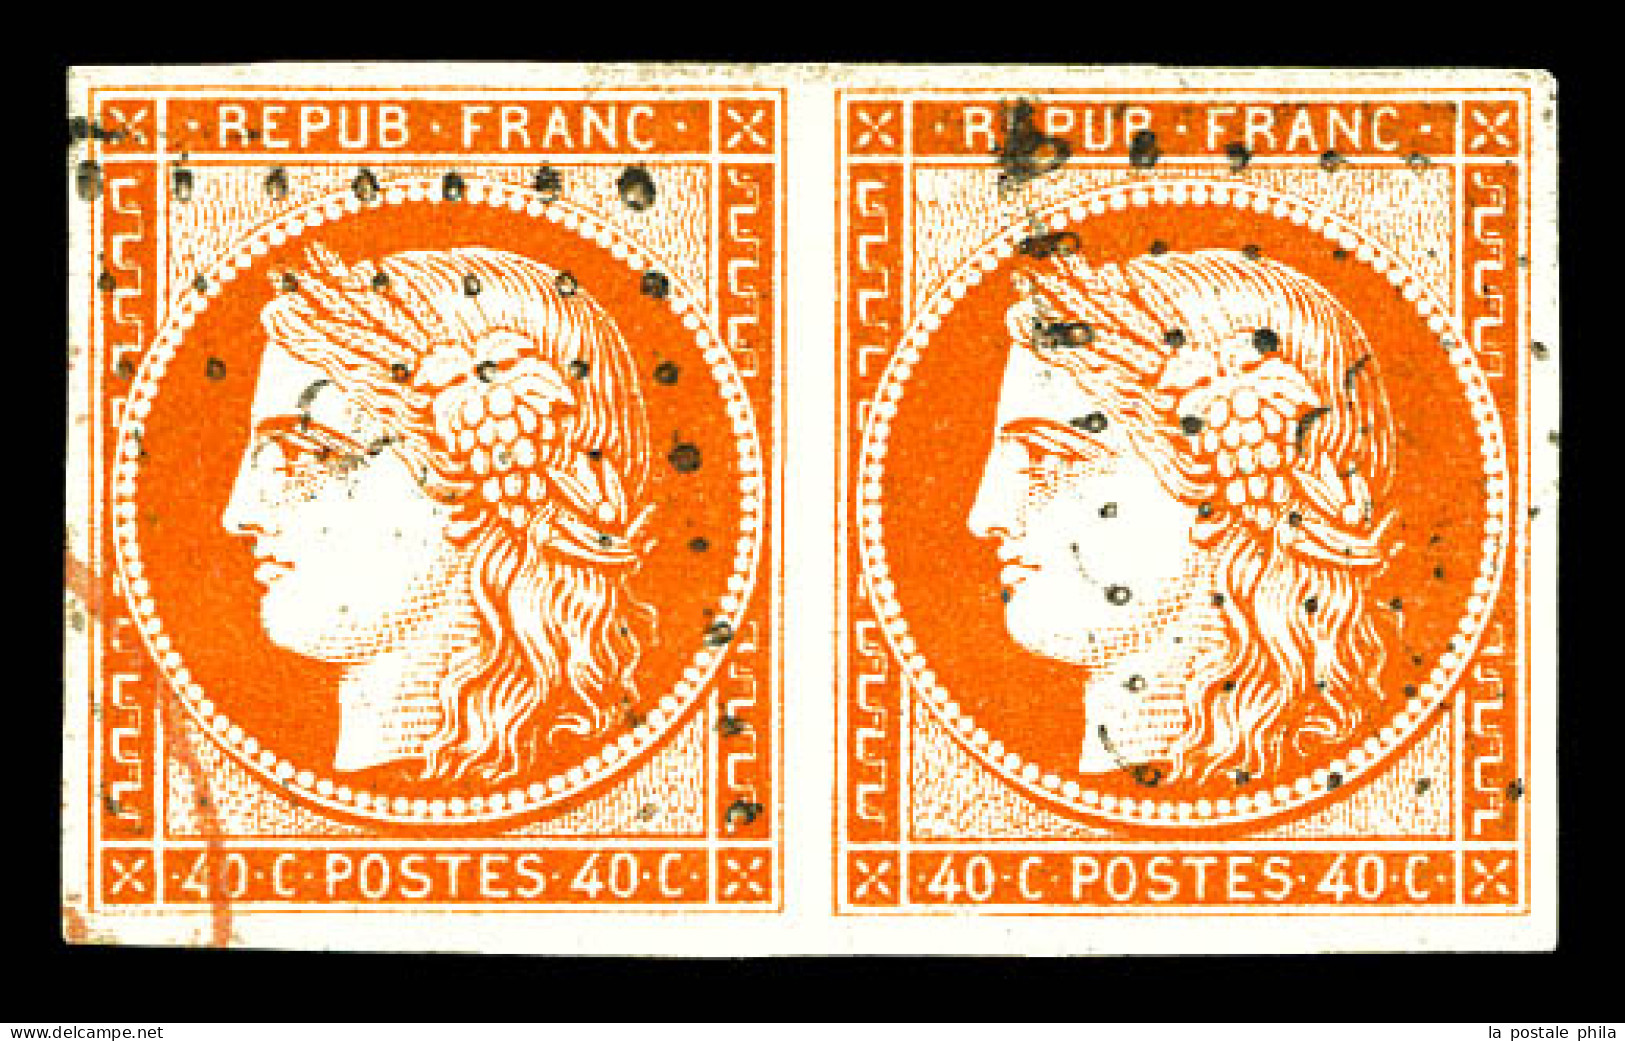 O N°5, 40c Orange En Paire, Grande Fraîcheur. SUP (signée Scheller/certificat)  Qualité: Oblitéré  Cote: 1200 Euros - 1849-1850 Ceres